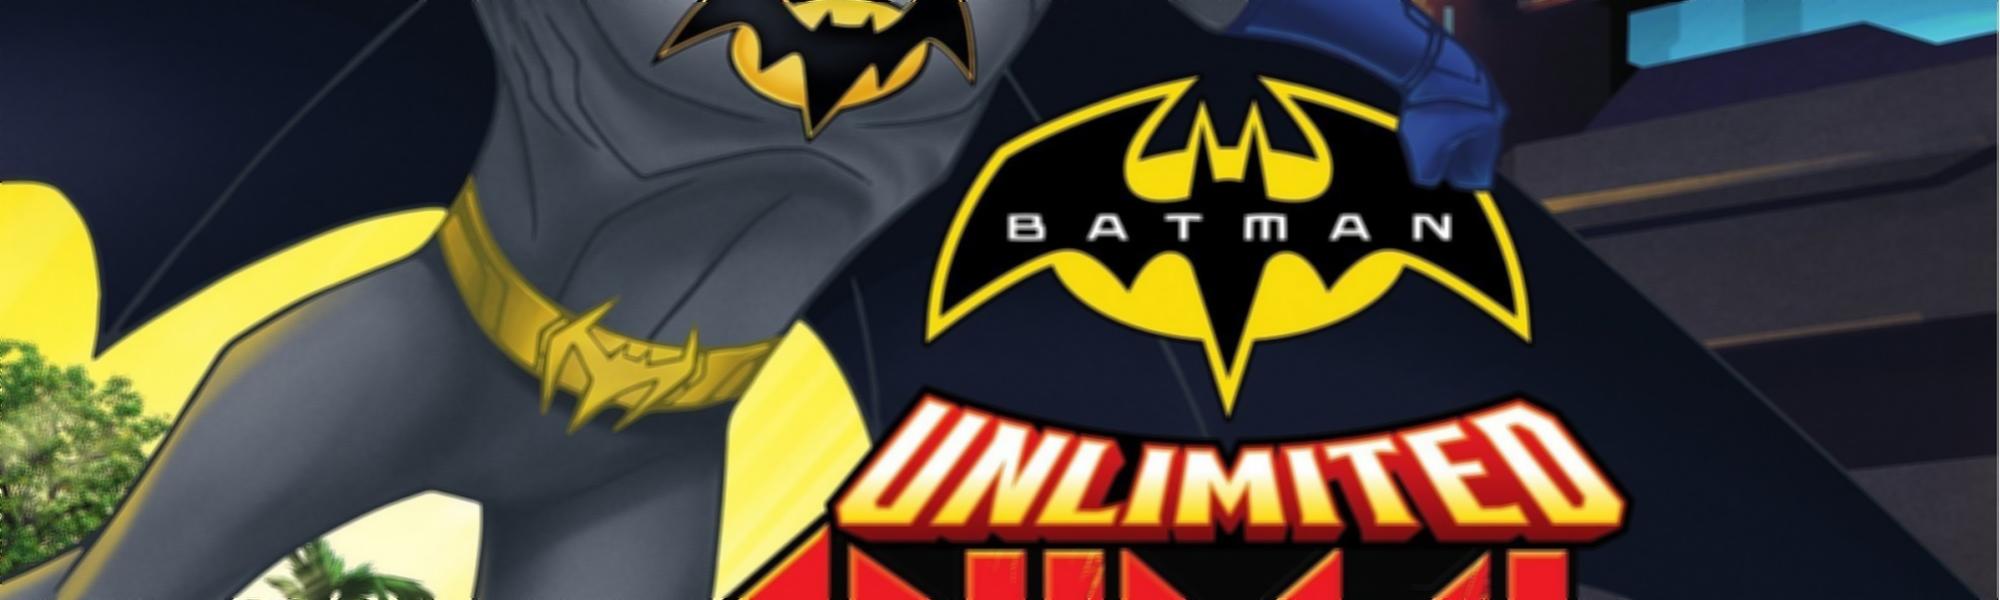 Ficha técnica completa - Batman Sem Limites: Instintos Animais - 12 de Maio  de 2015 | Filmow